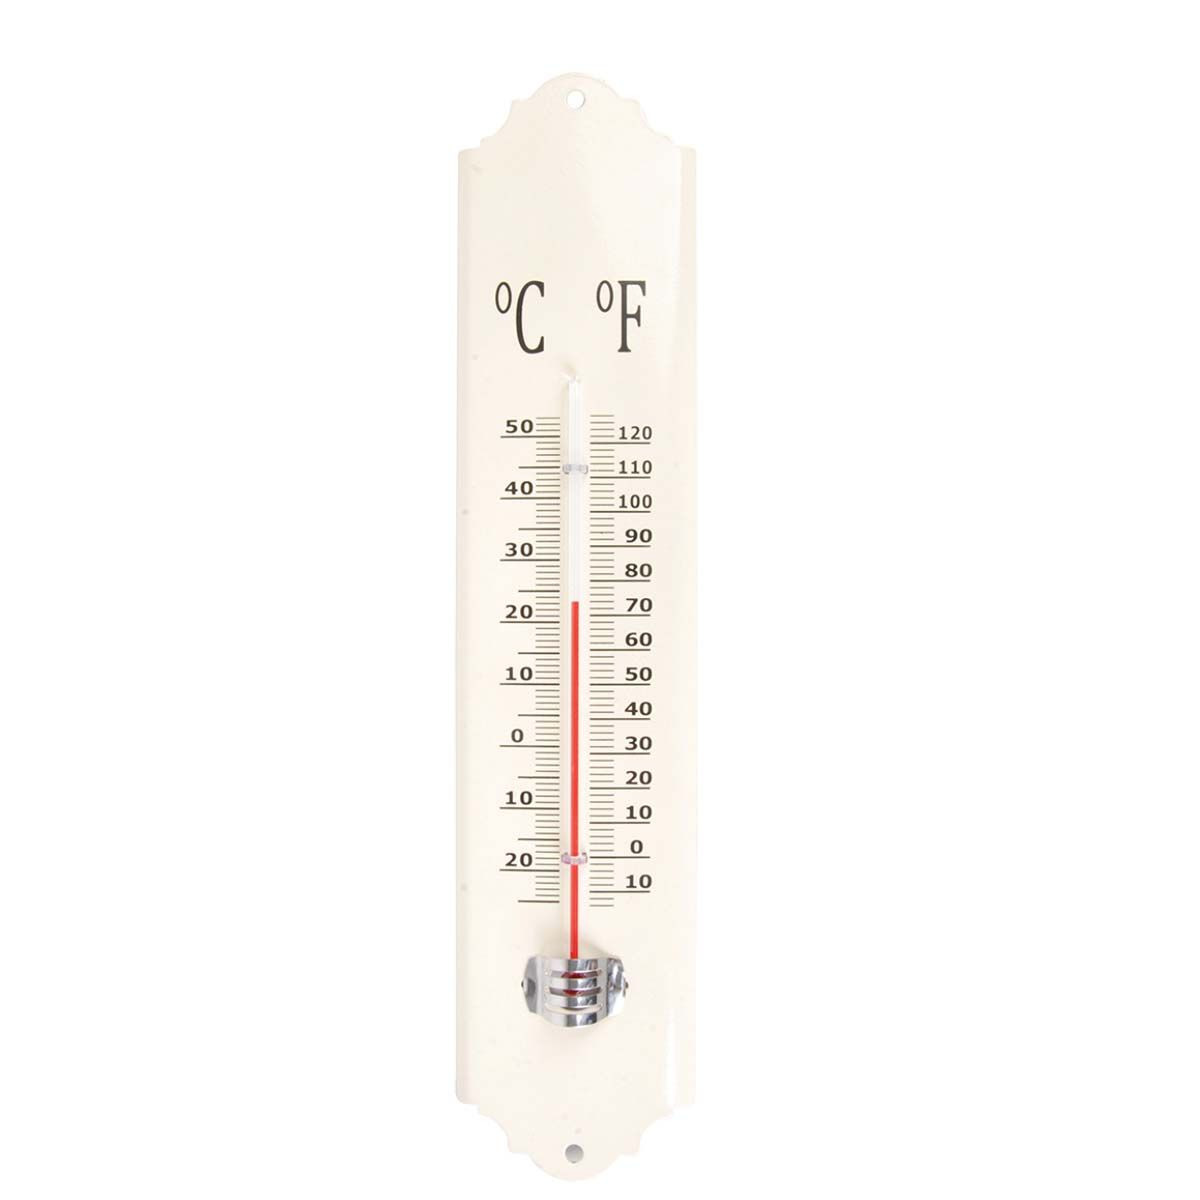 Thermomètre extérieur métal rouge